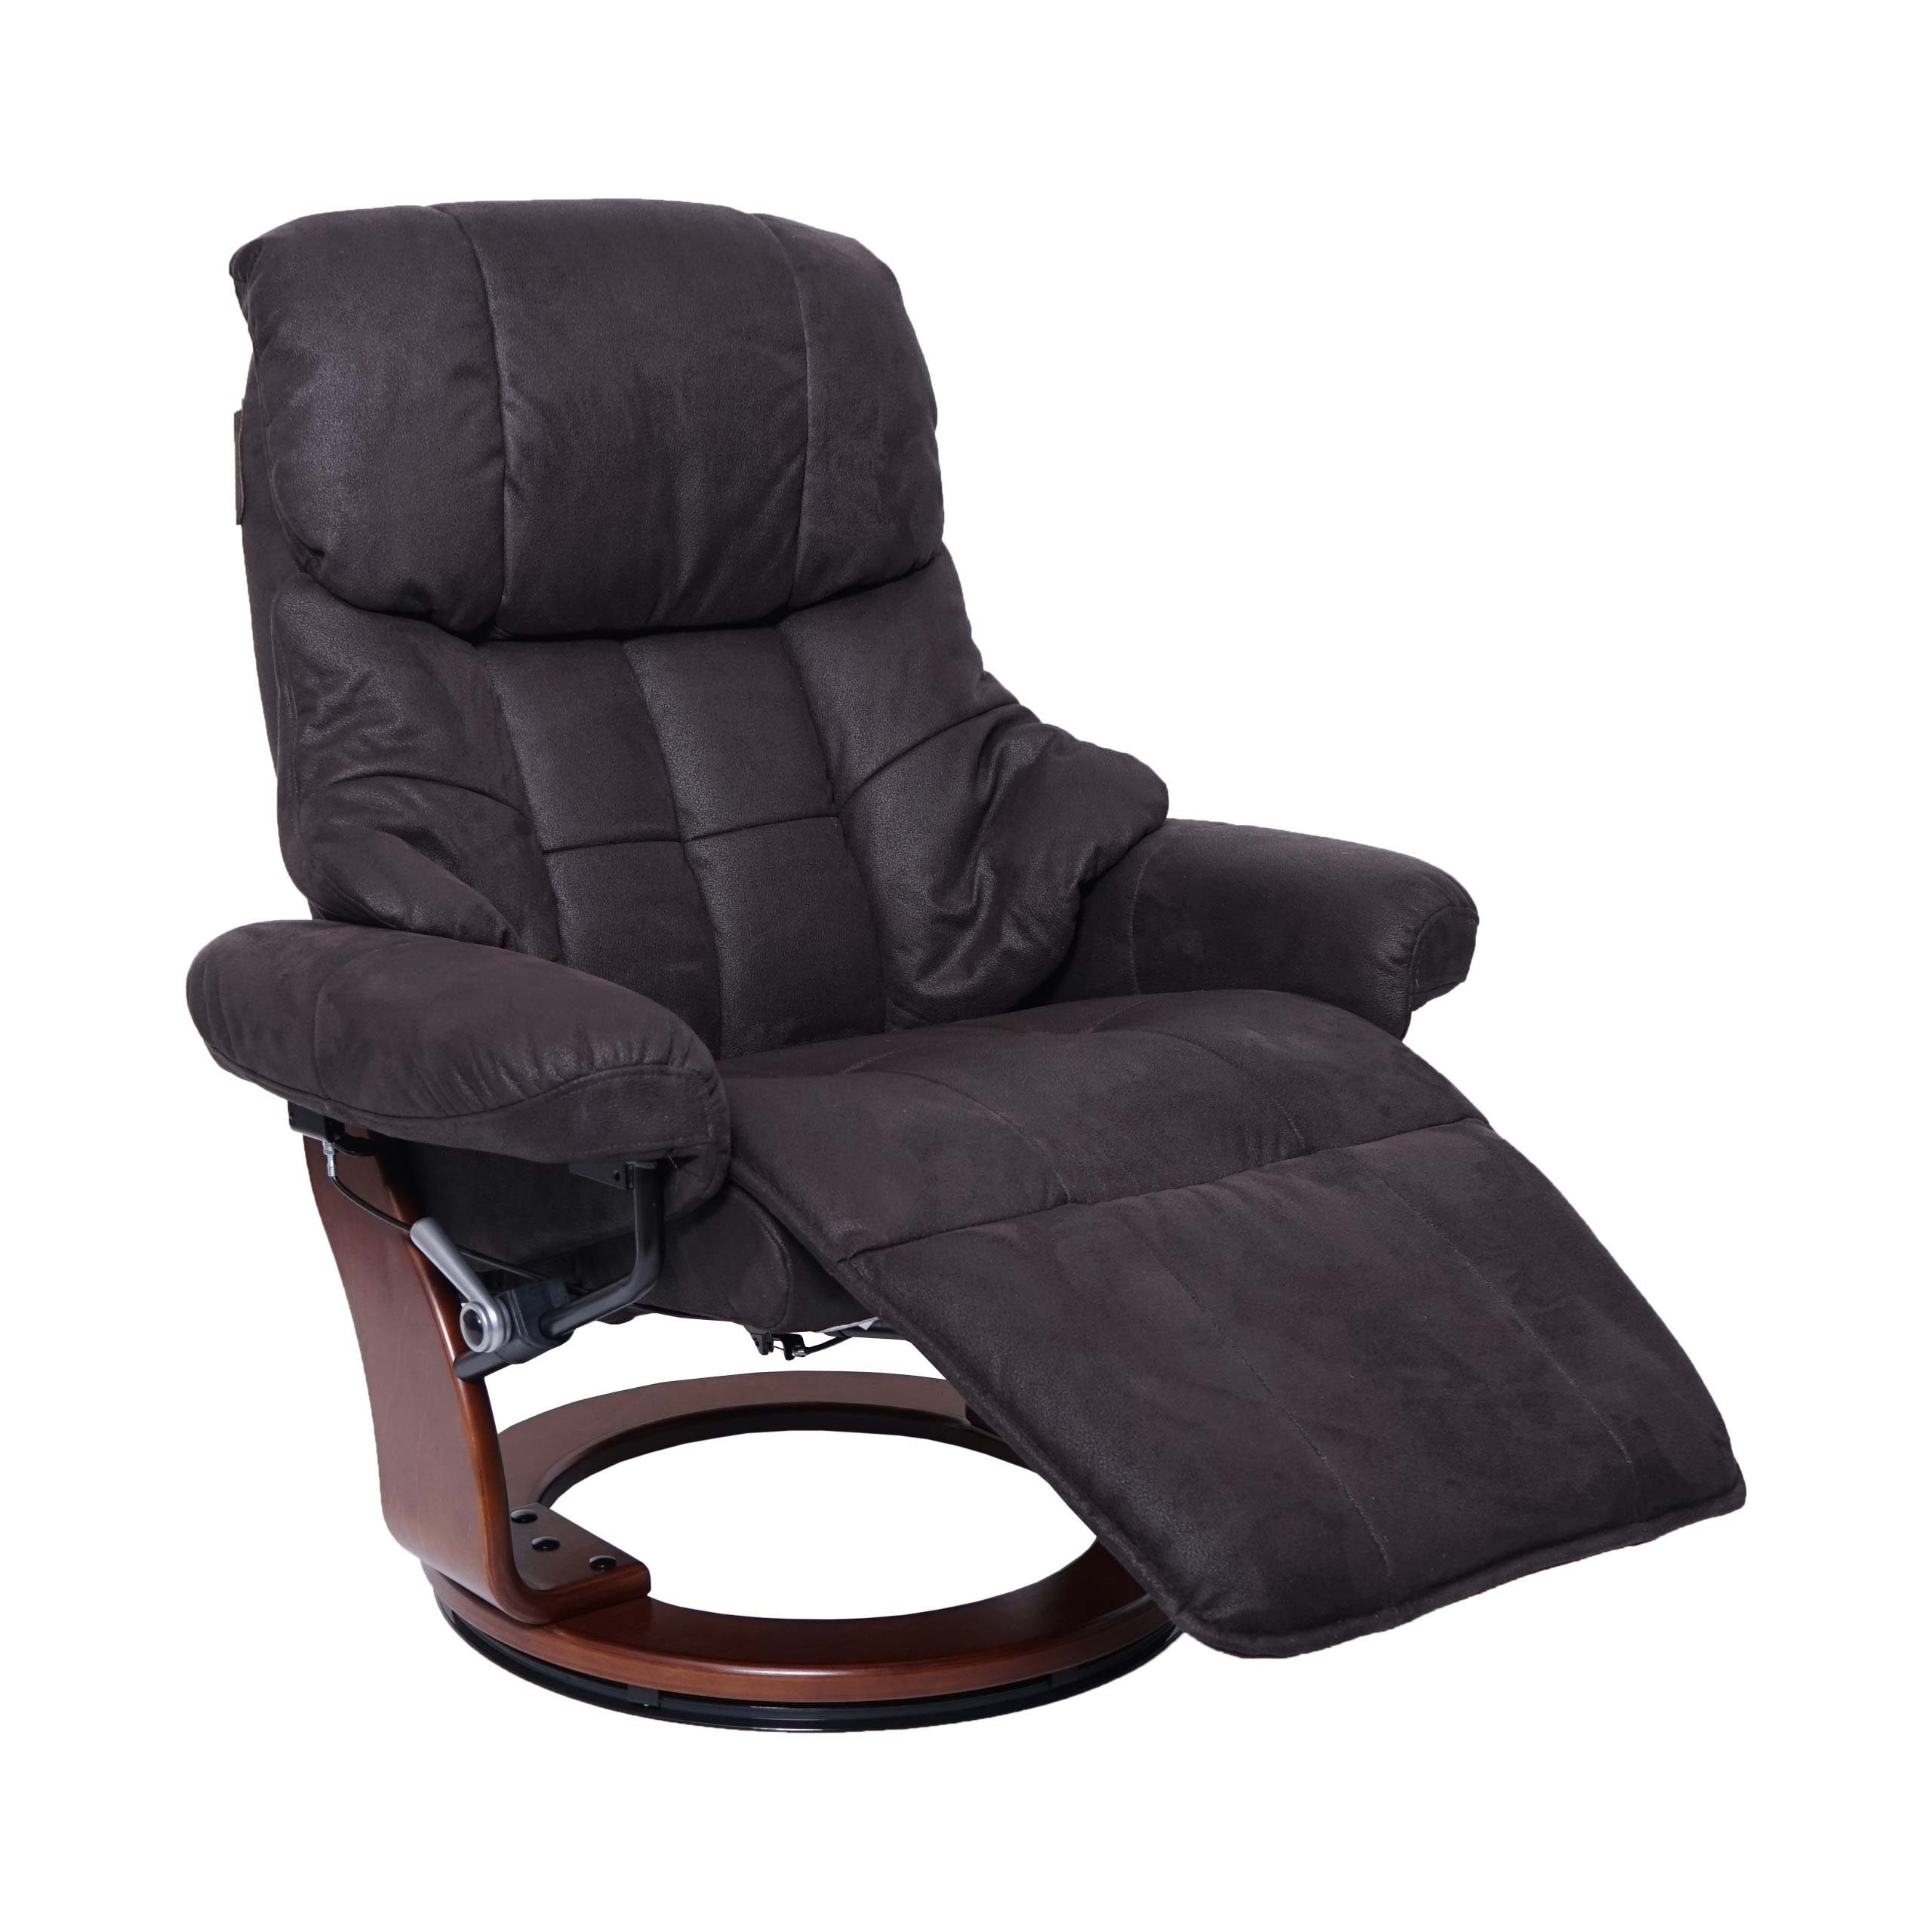 MCA furniture Relaxsessel Windsor 2-S, Fußstütze und Rückenlehne separat verstellbar, extradicke Polsterung braun-schwarz, Walnuss-Optik